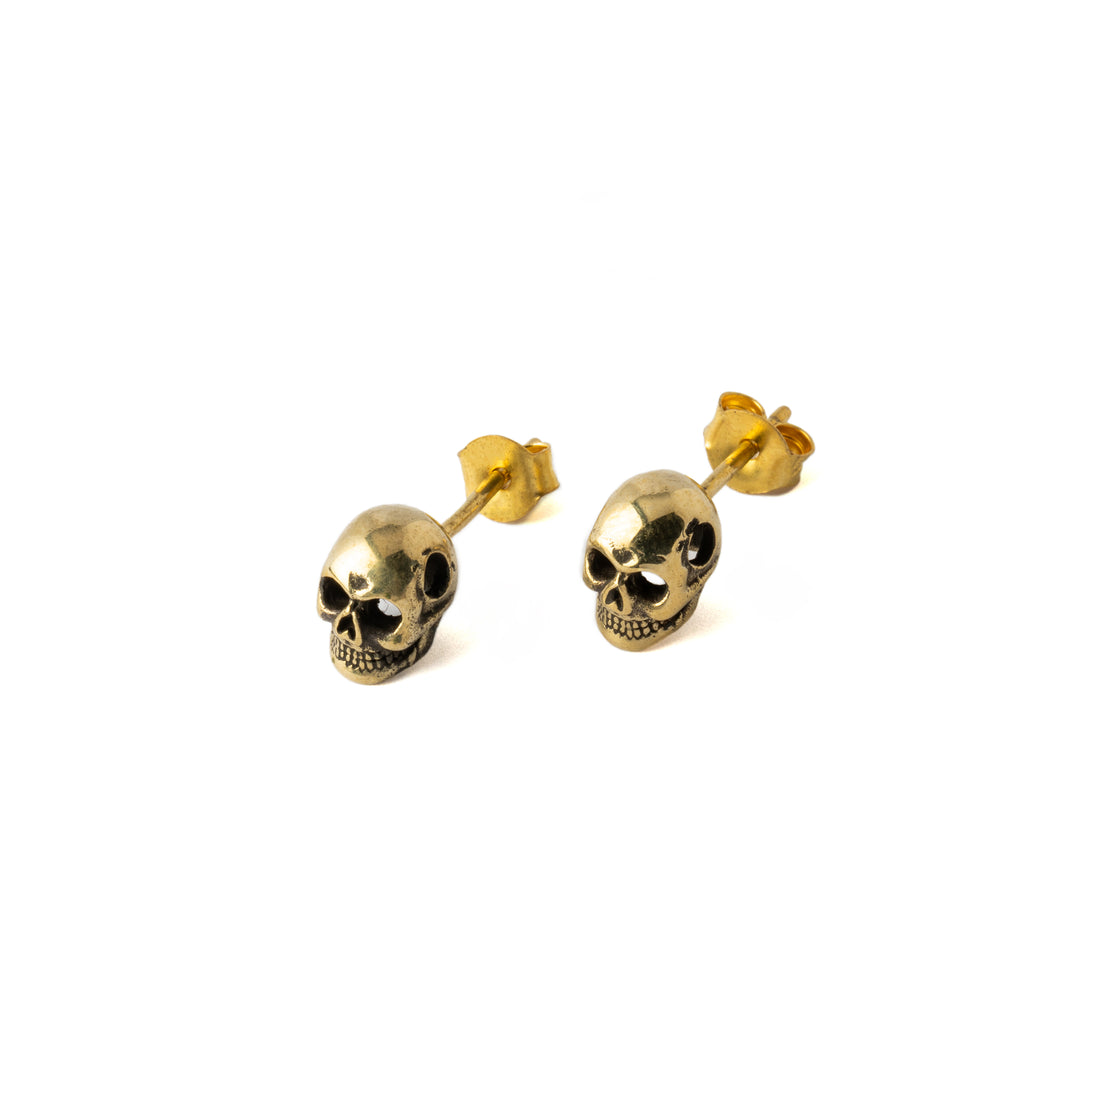 Golden Skull Stud Earrings right side view